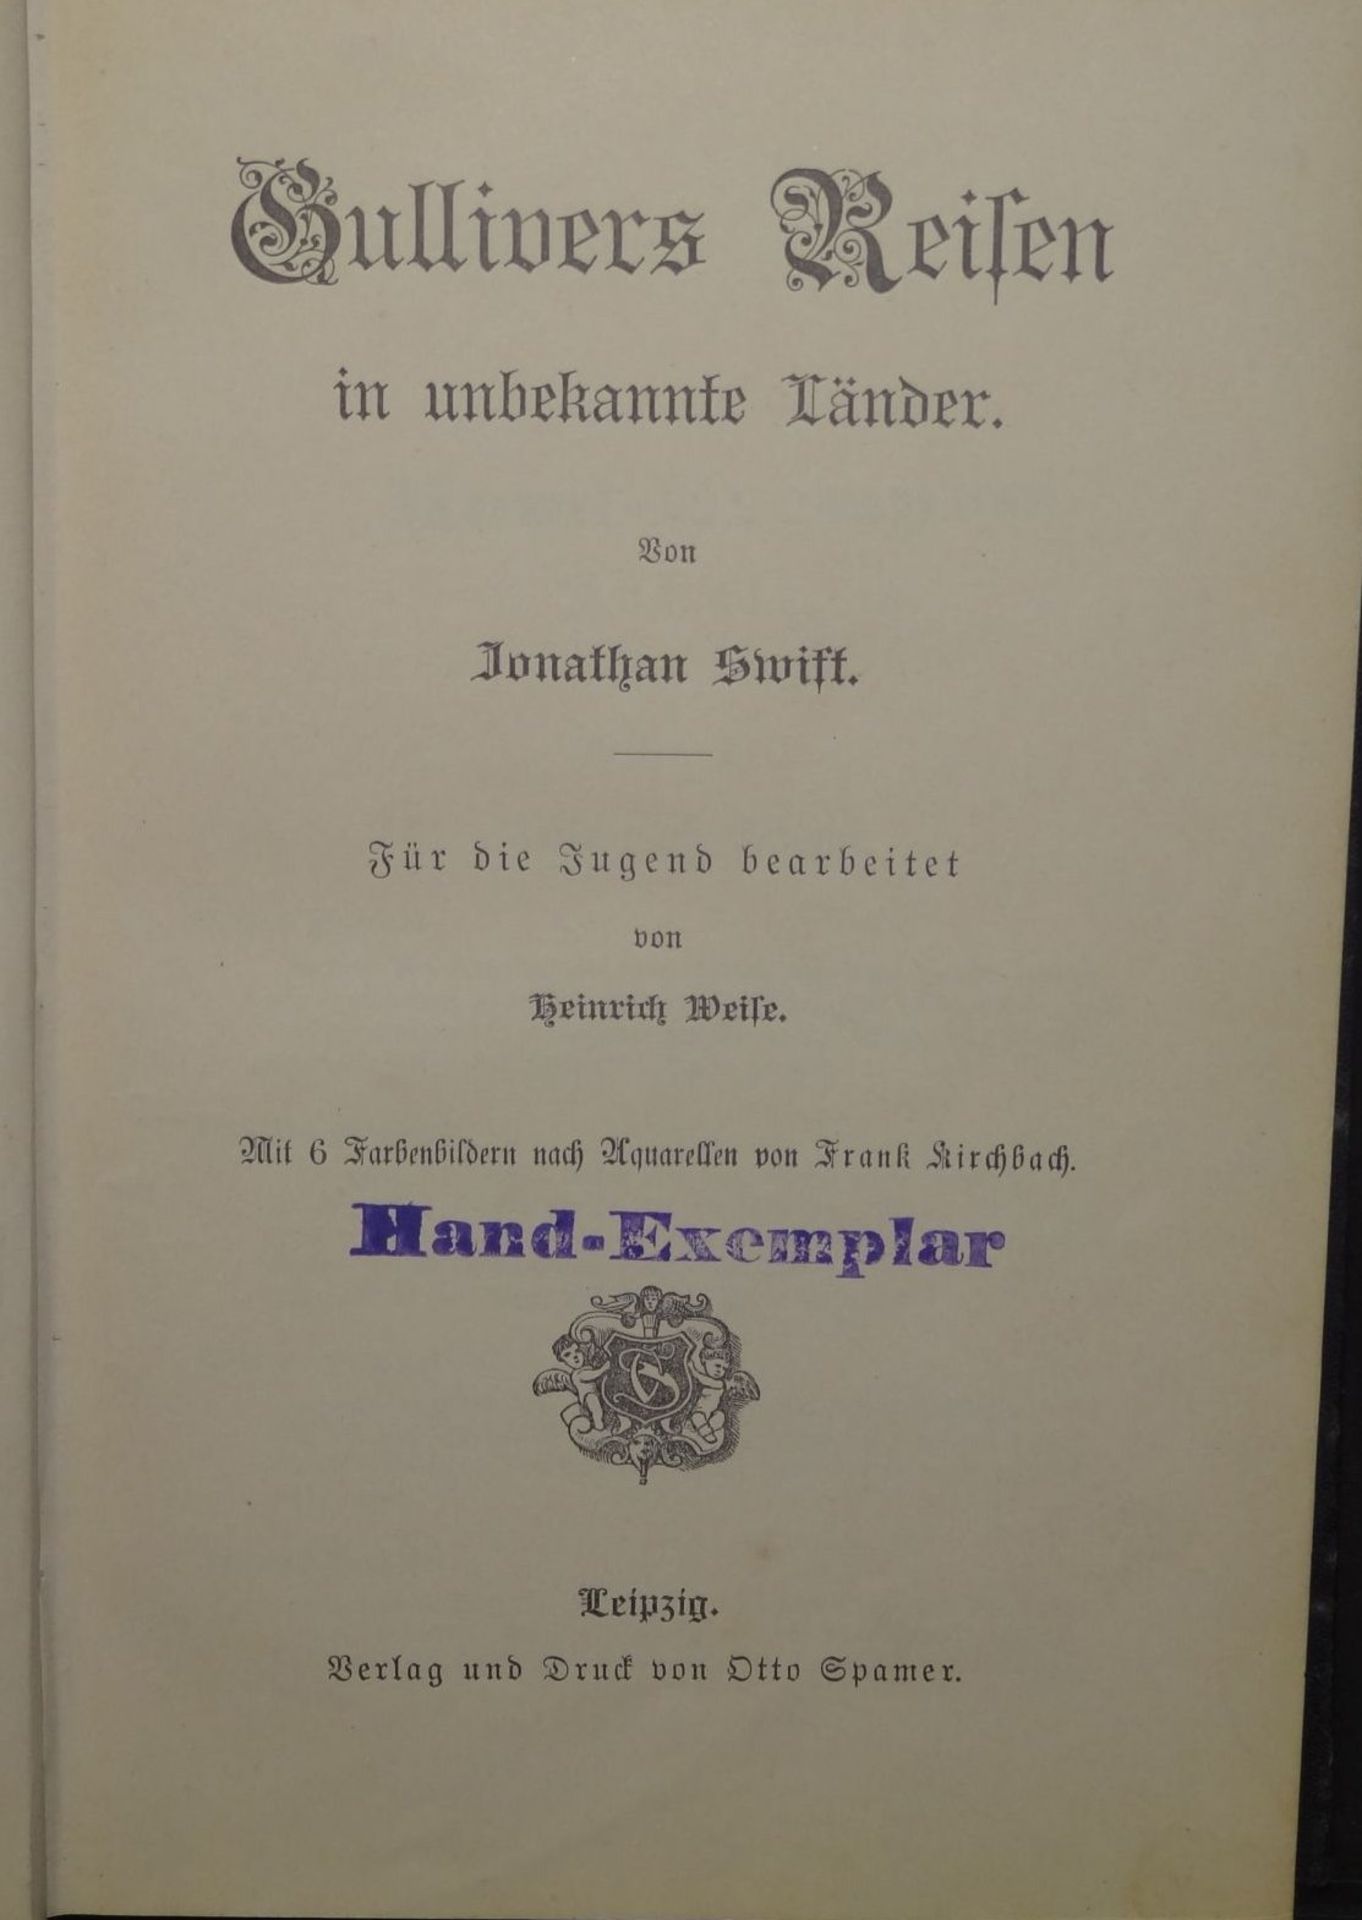 Gullivers Reisen in unbekannte Länder. Für die Jugend bearbeitet von Heinrich Weise. 1898, mit - Bild 3 aus 7